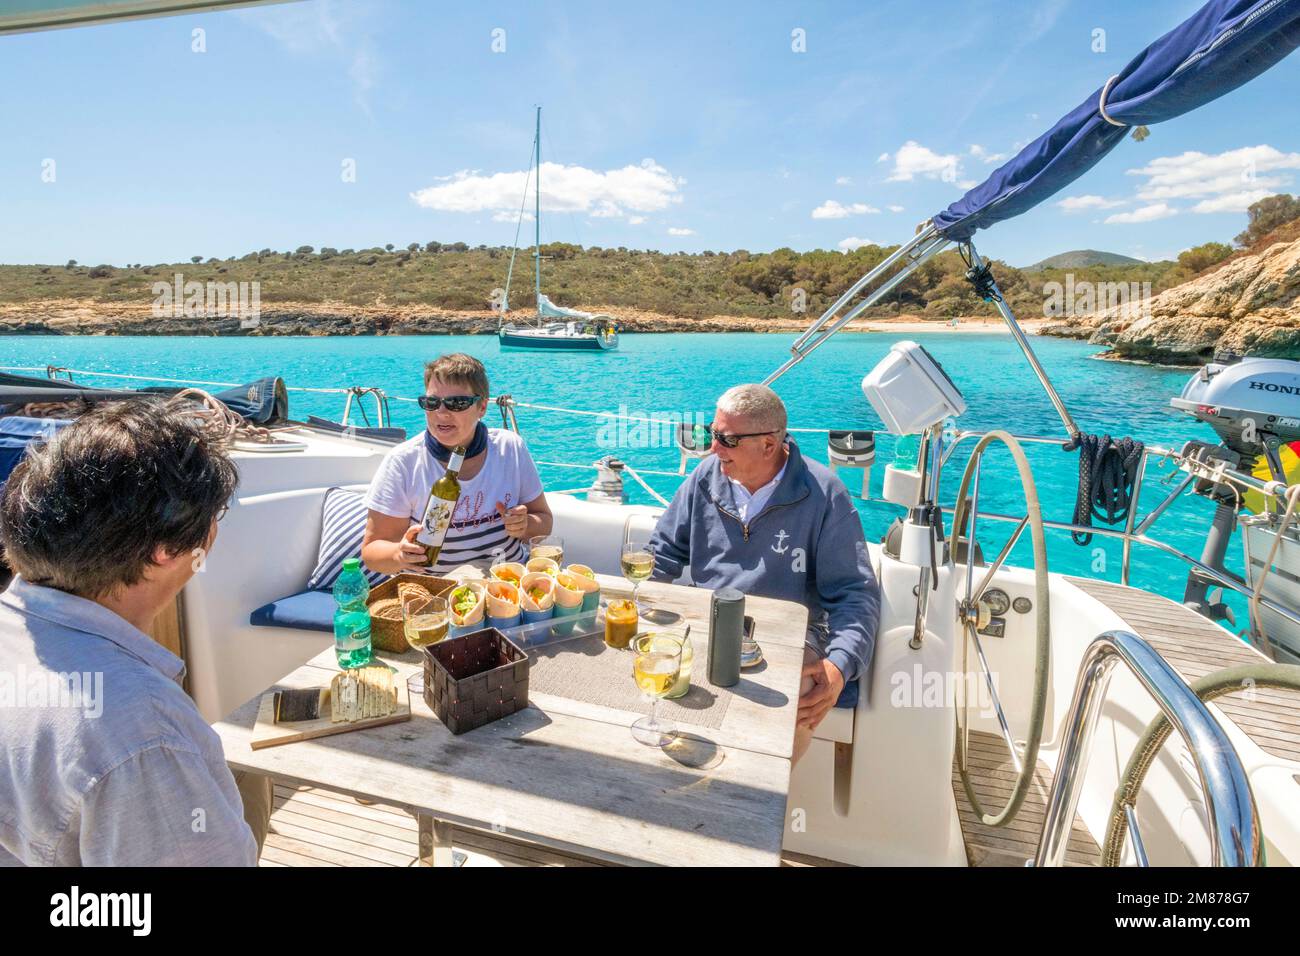 In un viaggio in barca a vela al largo di Porto Cristo, Maiorca, le acque turchesi di Cala Varques sono una sosta invitante. Foto Stock